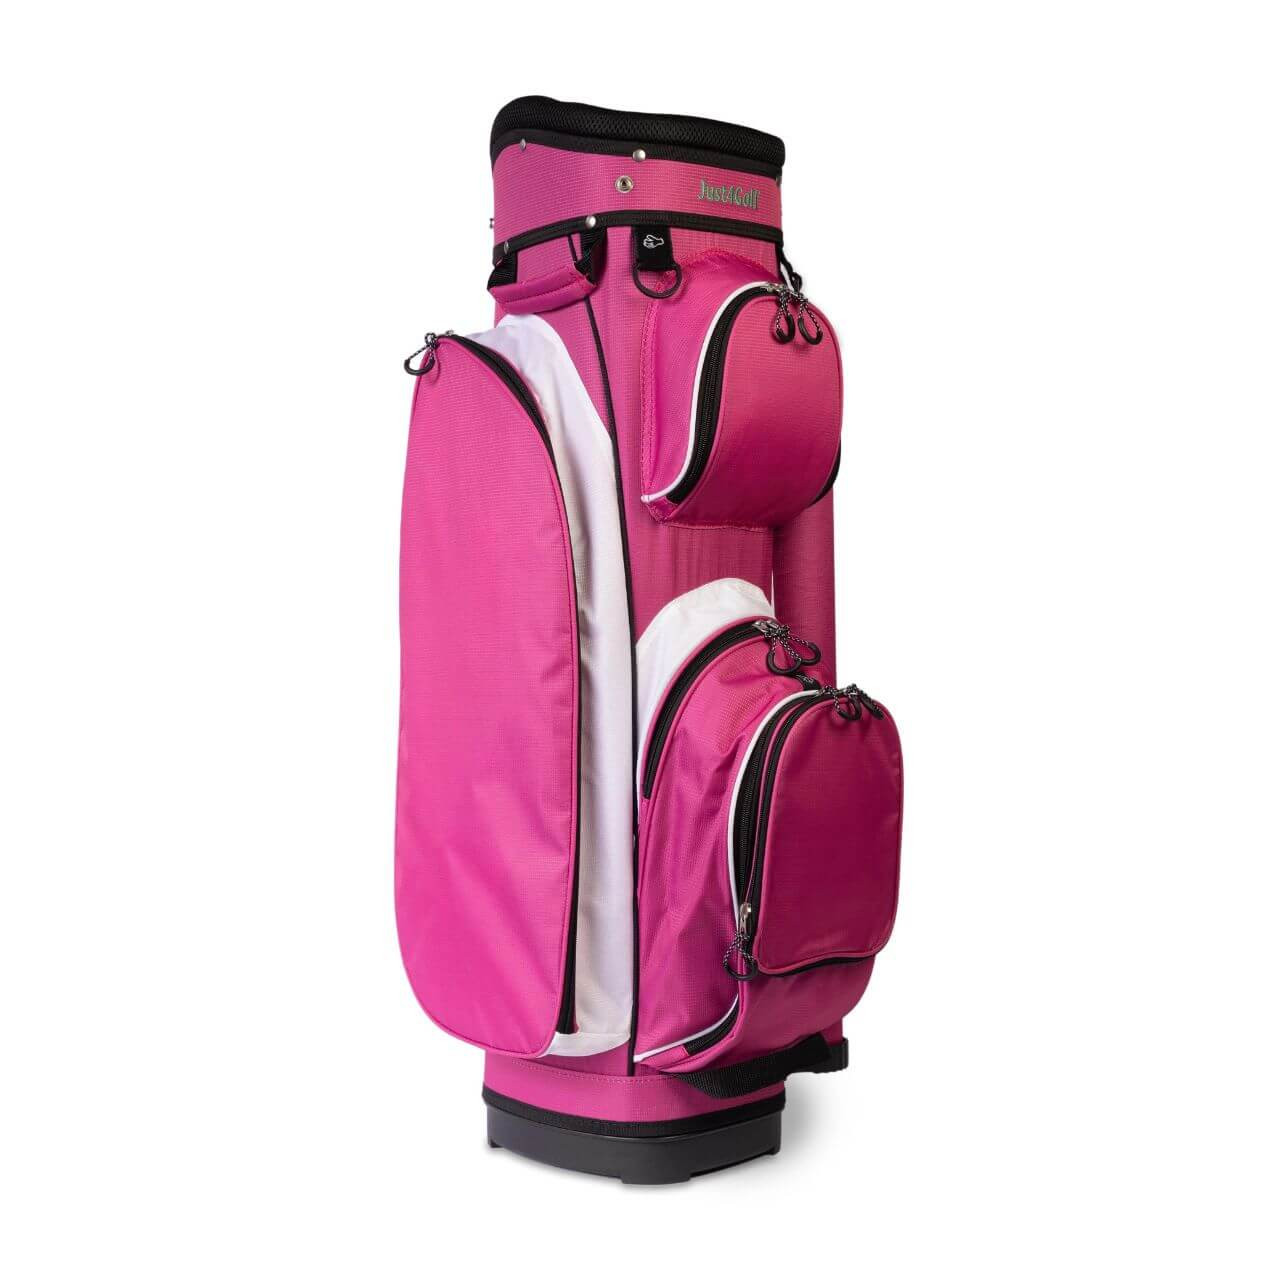 Just4Golf Pink Golf Bag - Cart Size